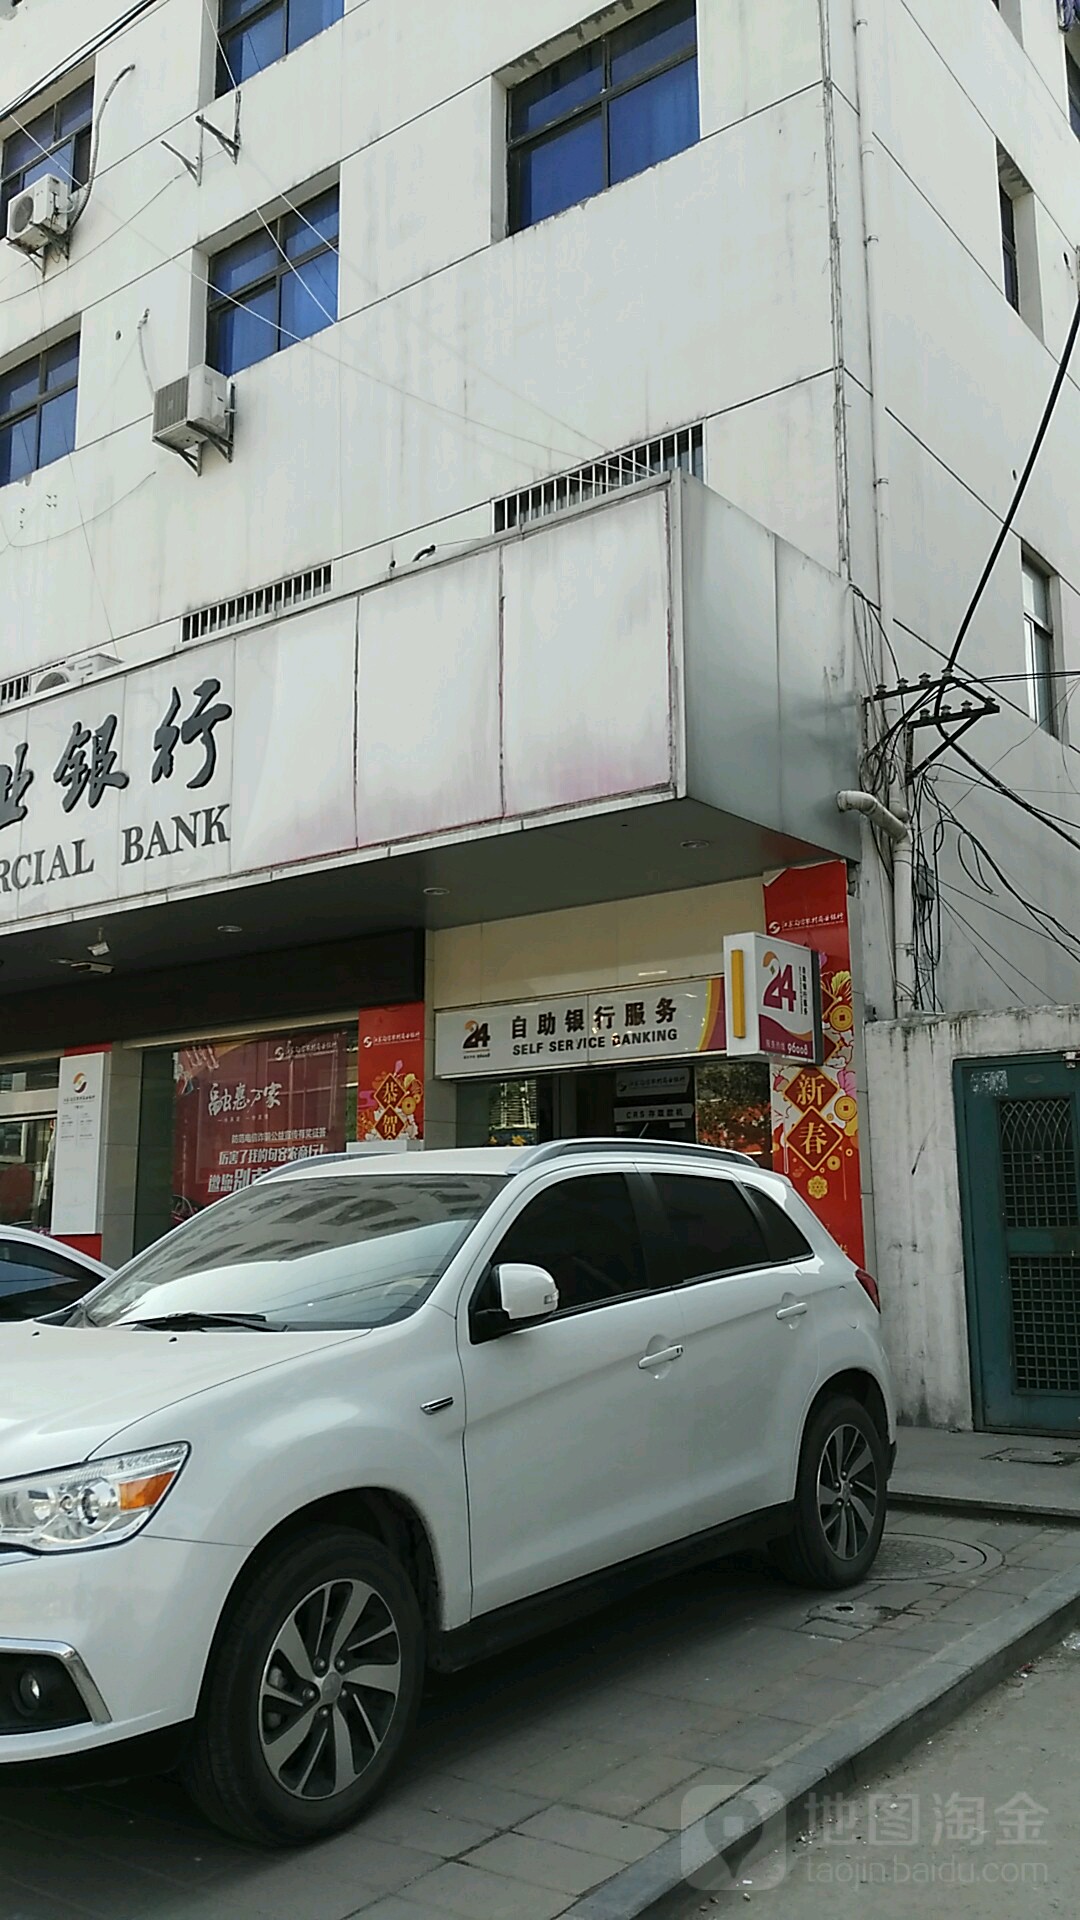 江蘇句容農村商業銀行24小時自助銀行(下蜀支行)